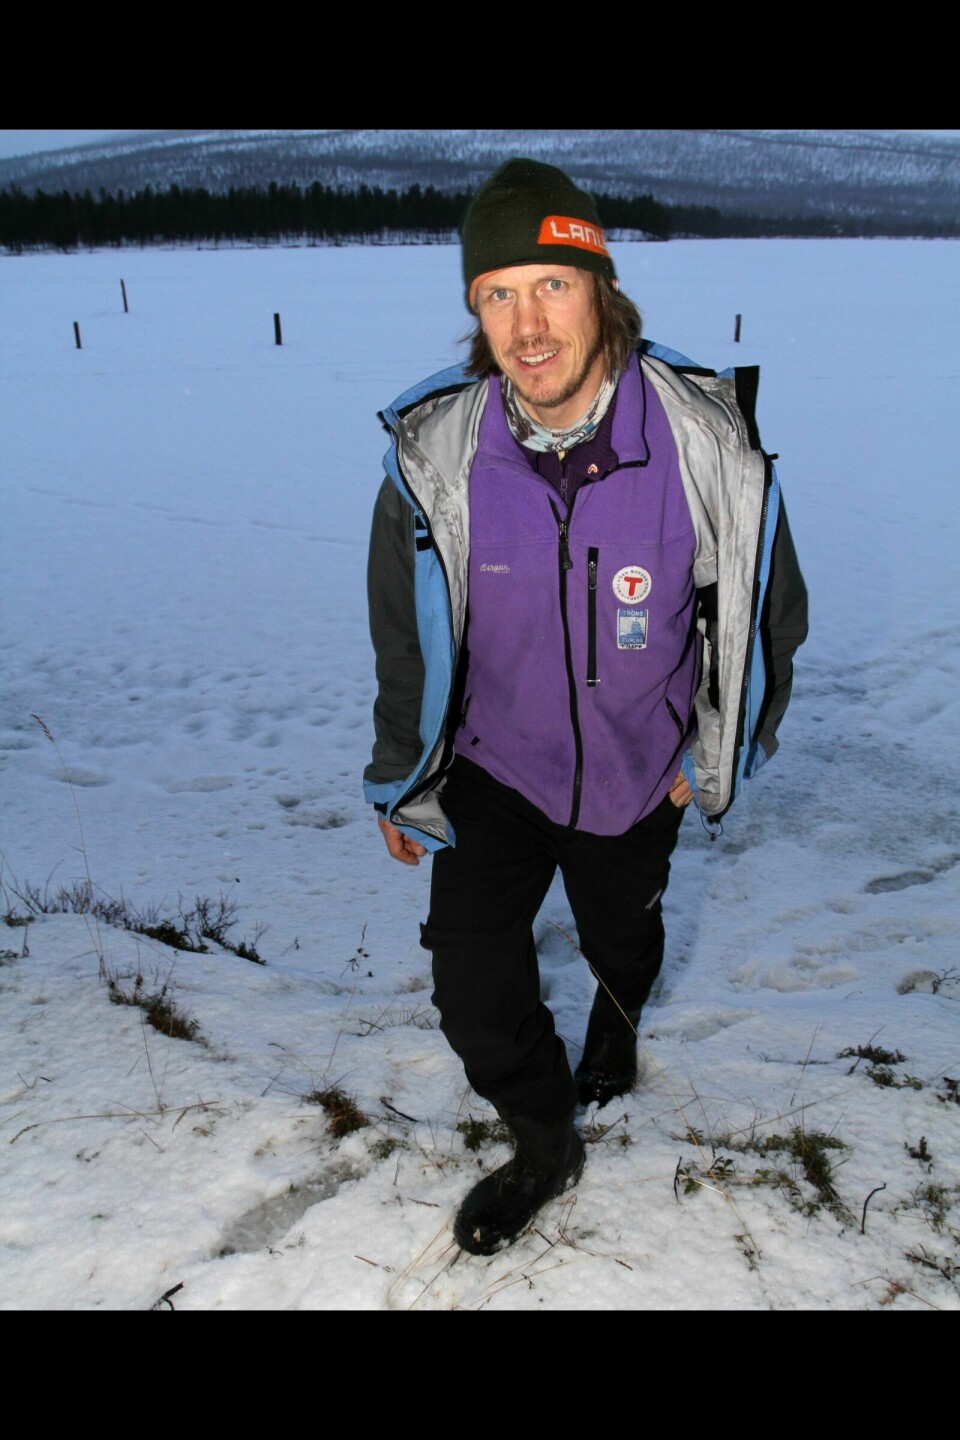 IKKE SNØ: Espen Prestbakmo og arrangørene av Troms Quest tar ingen sjanser på å sende kjørere og hundespann ut på Rostavannet uten snø. (Arkivfoto)